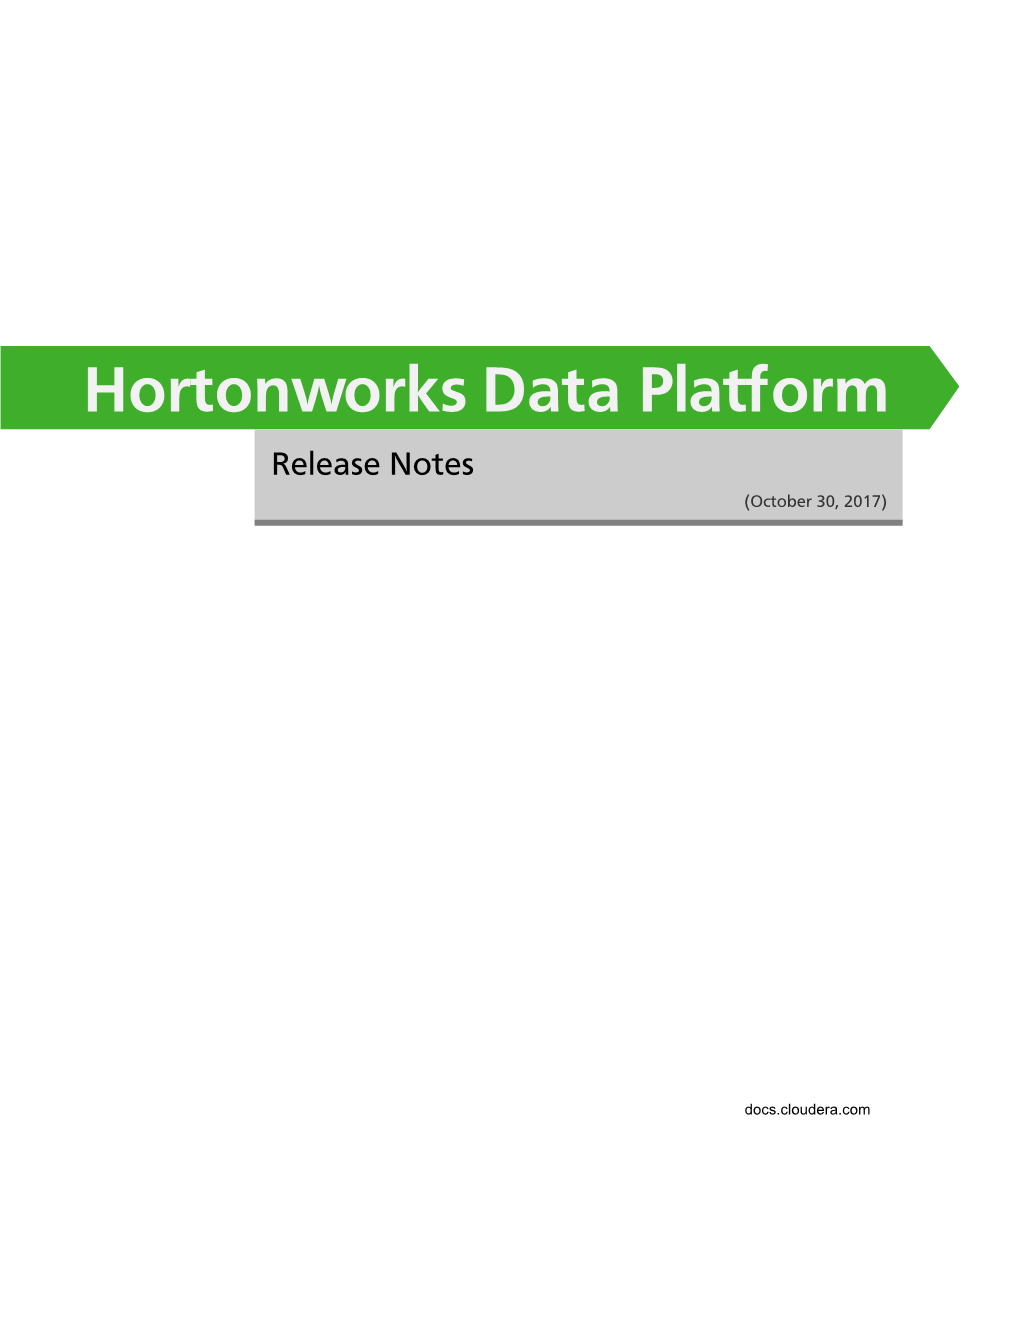 Hortonworks Data Platform Release Notes (October 30, 2017)